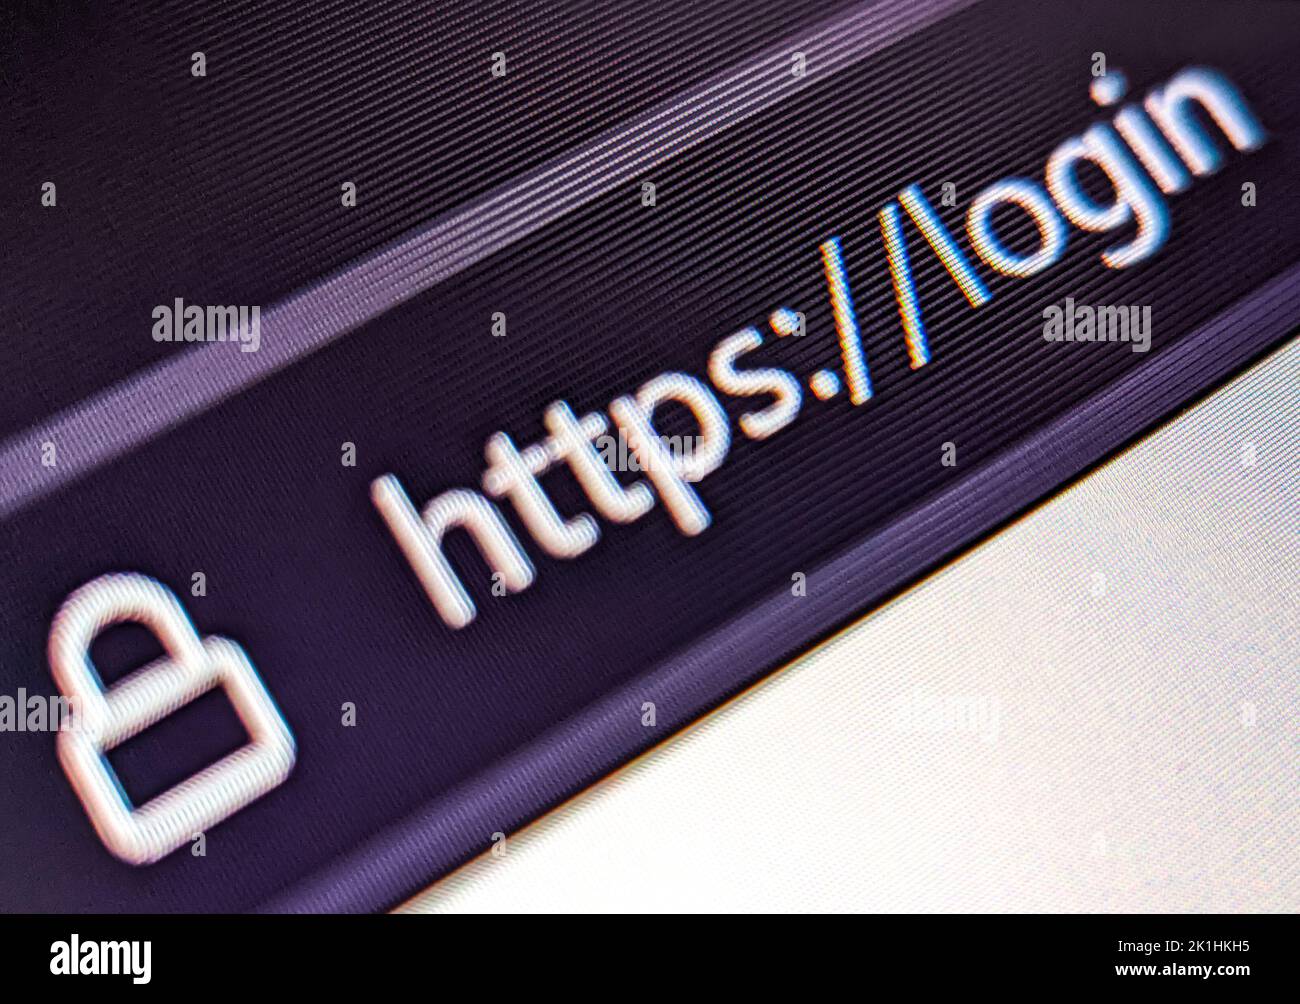 Vue en gros plan d'un navigateur Web avec une URL sécurisée affichée sur un écran pixélisé Banque D'Images